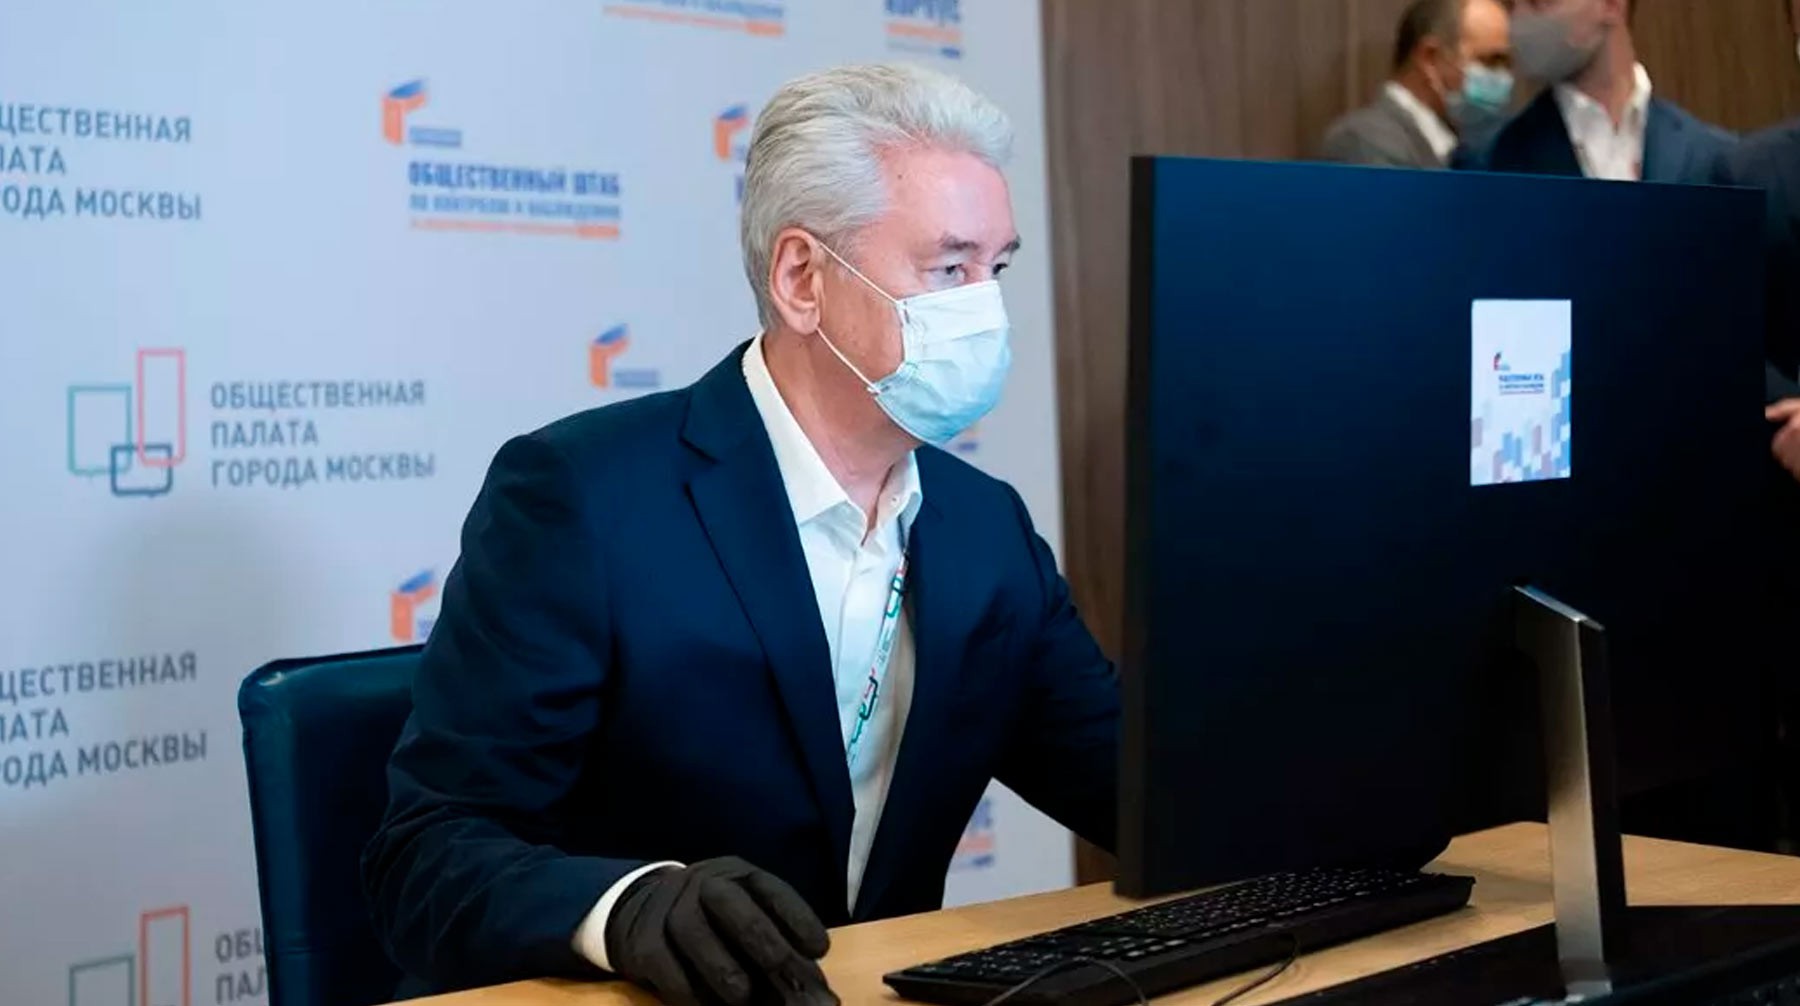 Dailystorm - Мэр Москвы Собянин подвел промежуточные итоги пандемии